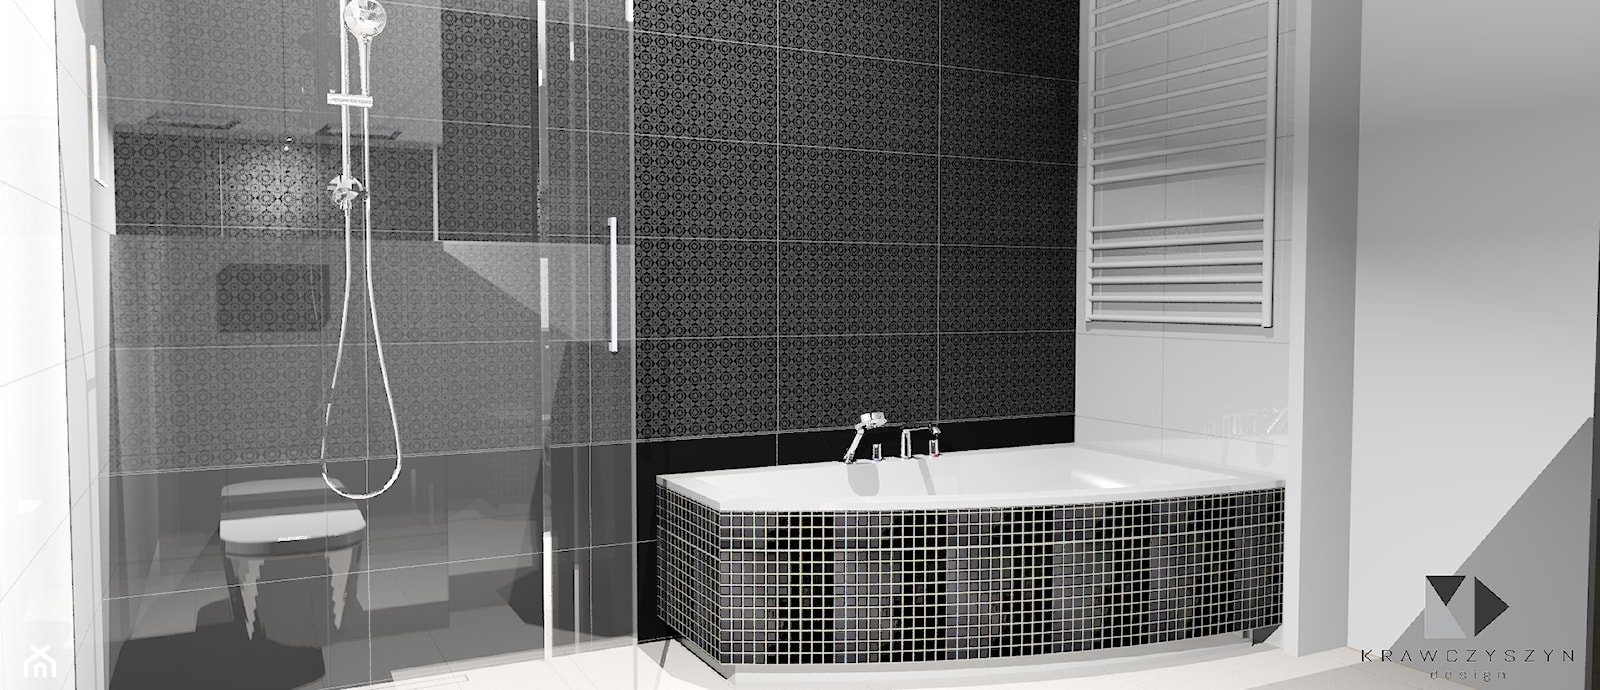 Nowoczesna łazienka Black&White - Mała na poddaszu bez okna łazienka, styl nowoczesny - zdjęcie od Krawczyszyn-design - Homebook